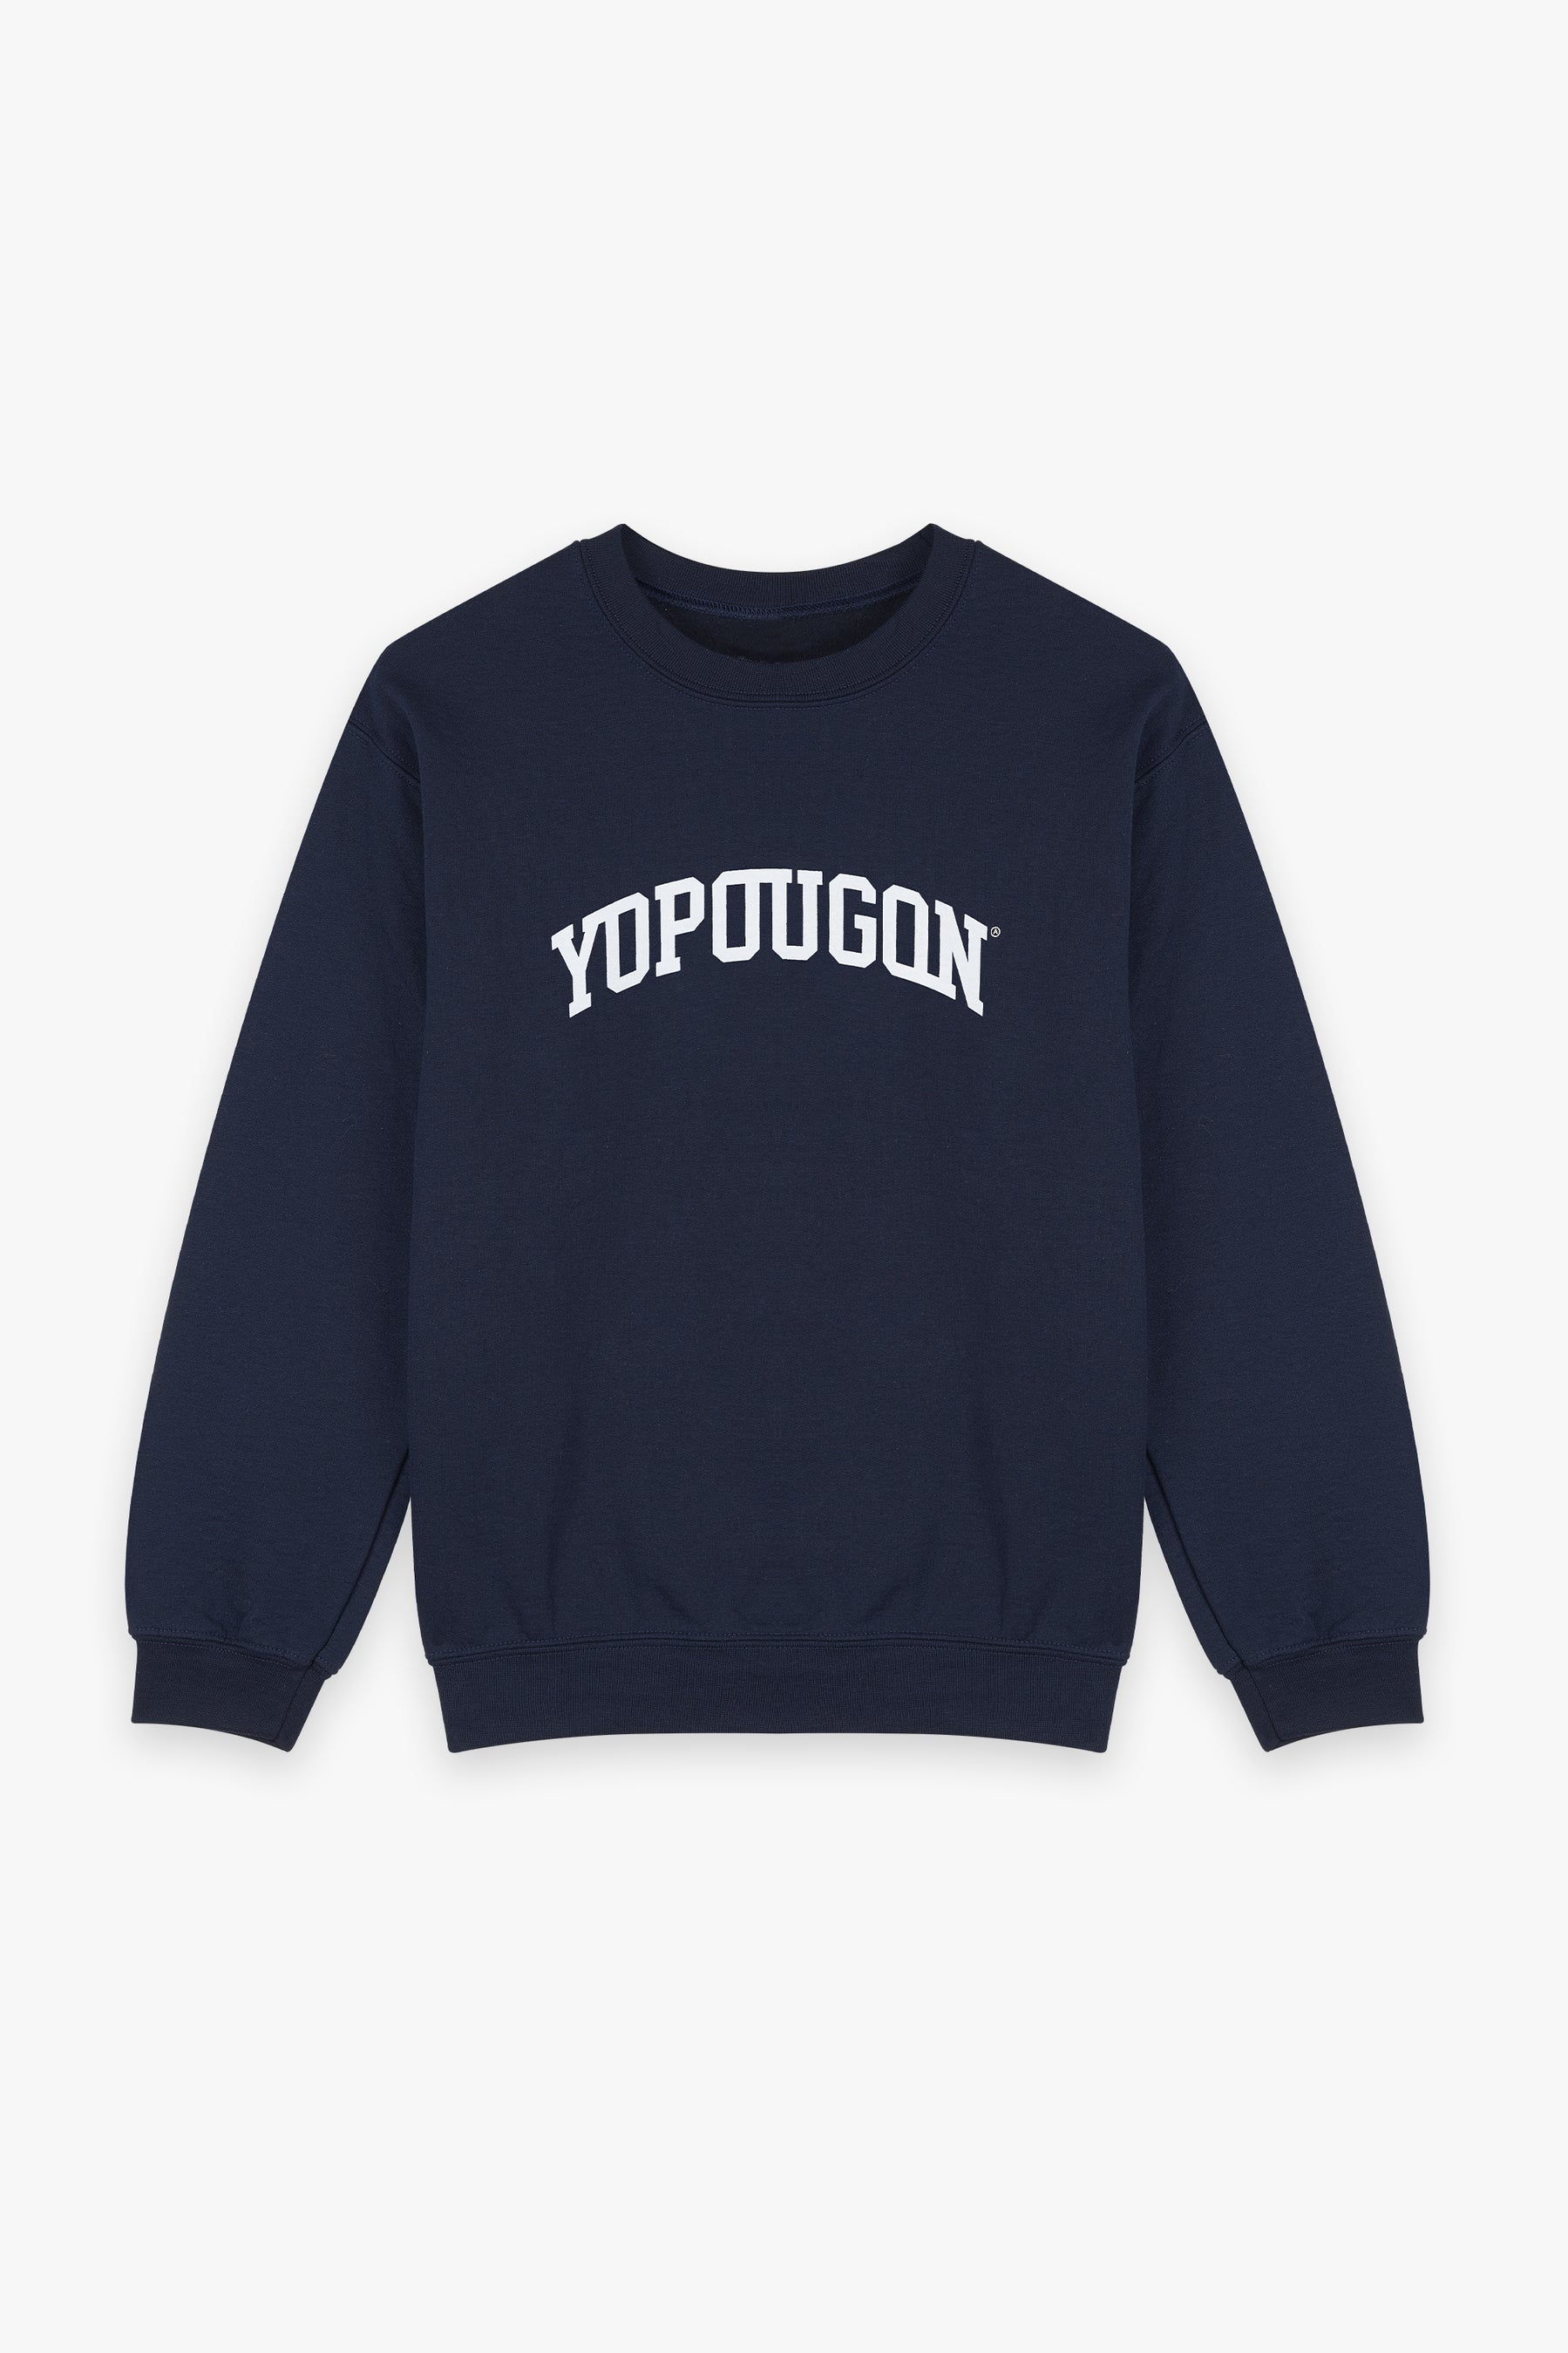 Yopougon Sweatshirt Navy